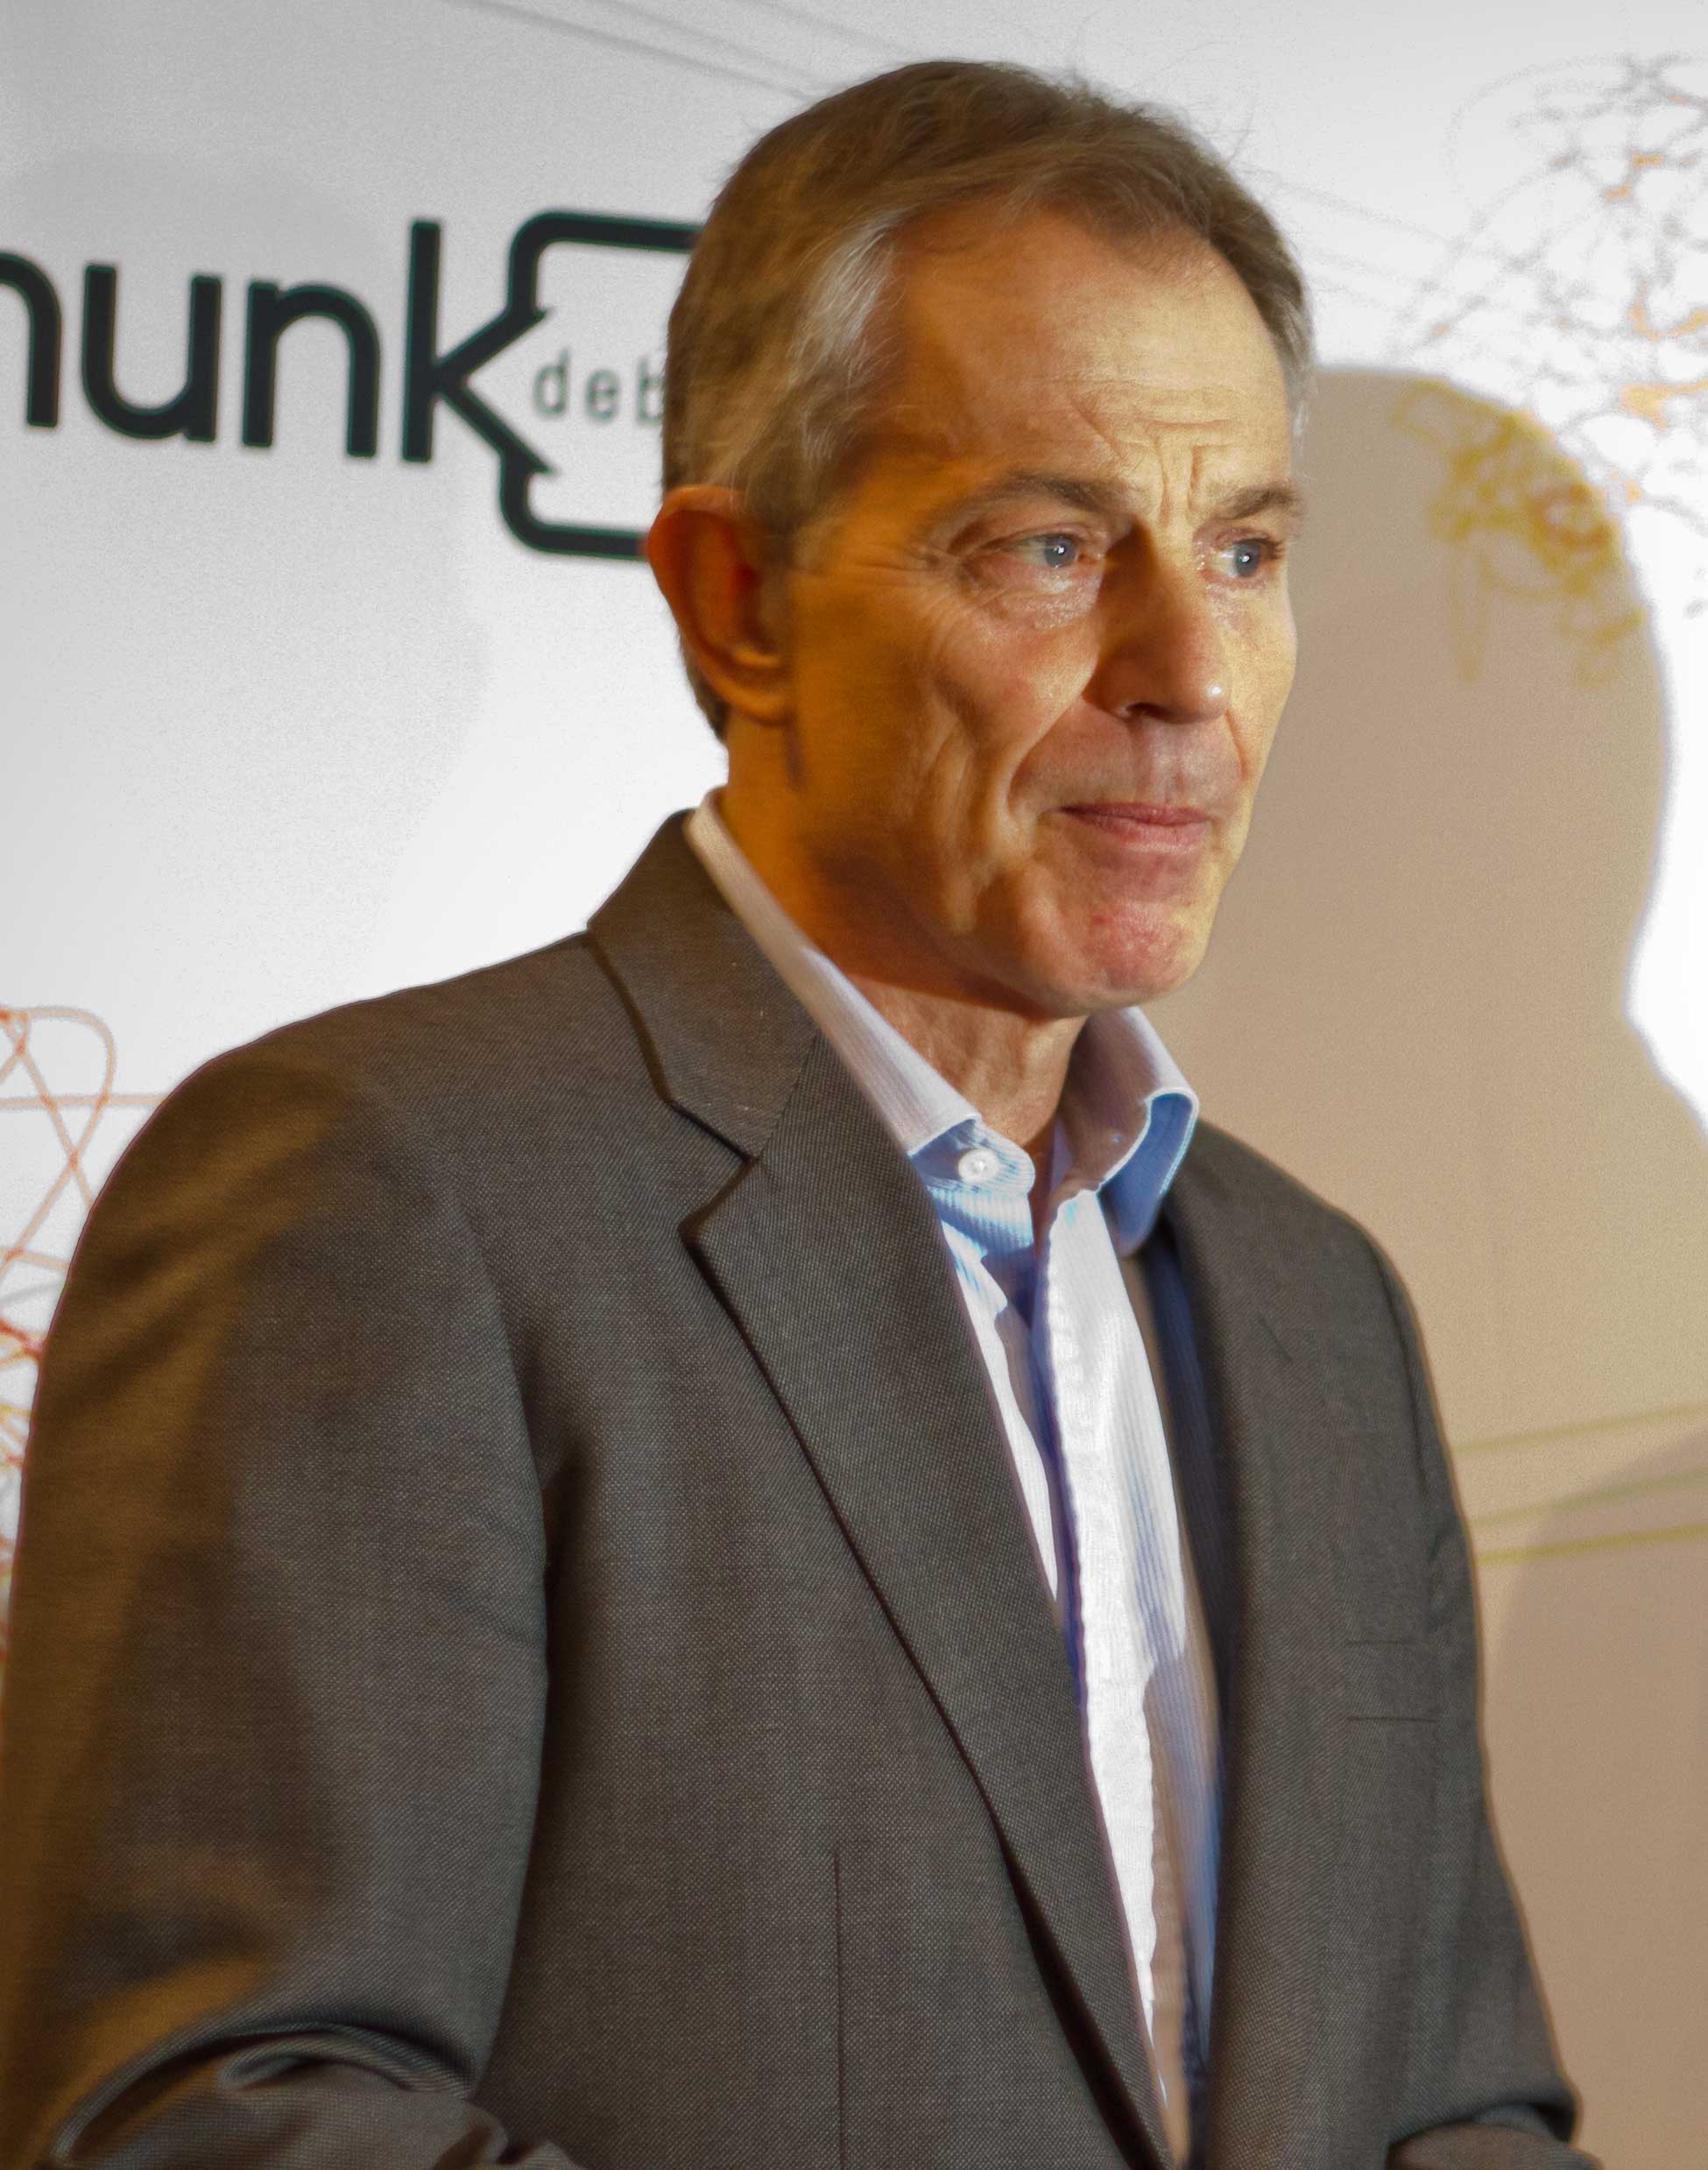 Tony Blair Photo